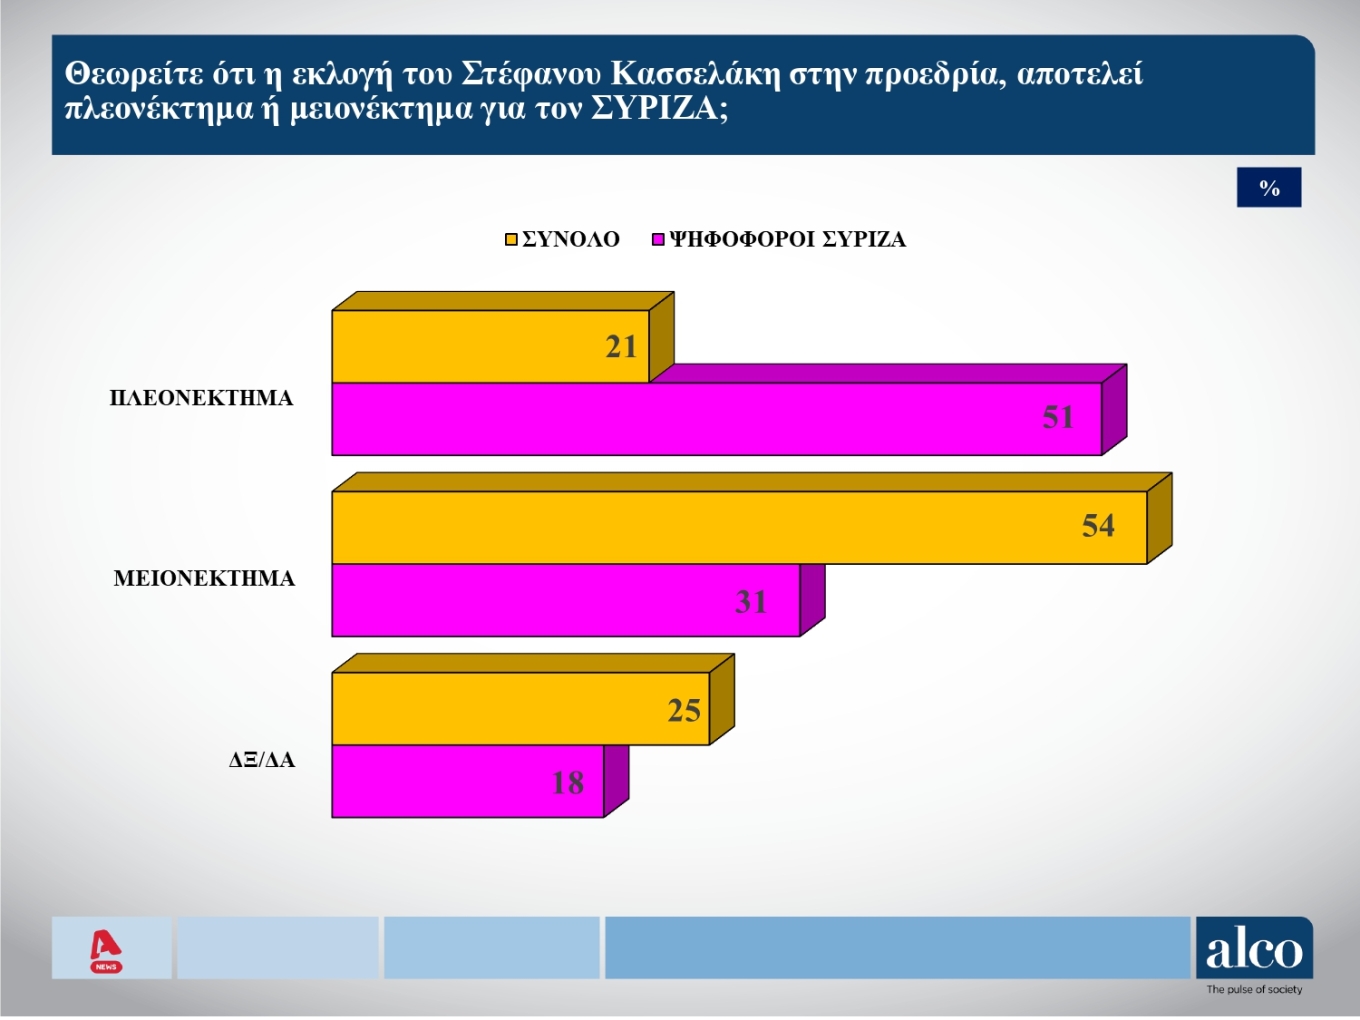 Δημοσκόπηση Alco: To 42% των ψηφοφόρων του ΣΥΡΙΖΑ θέλει να ανακαλέσει ο Κασσελάκης τις διαγραφές